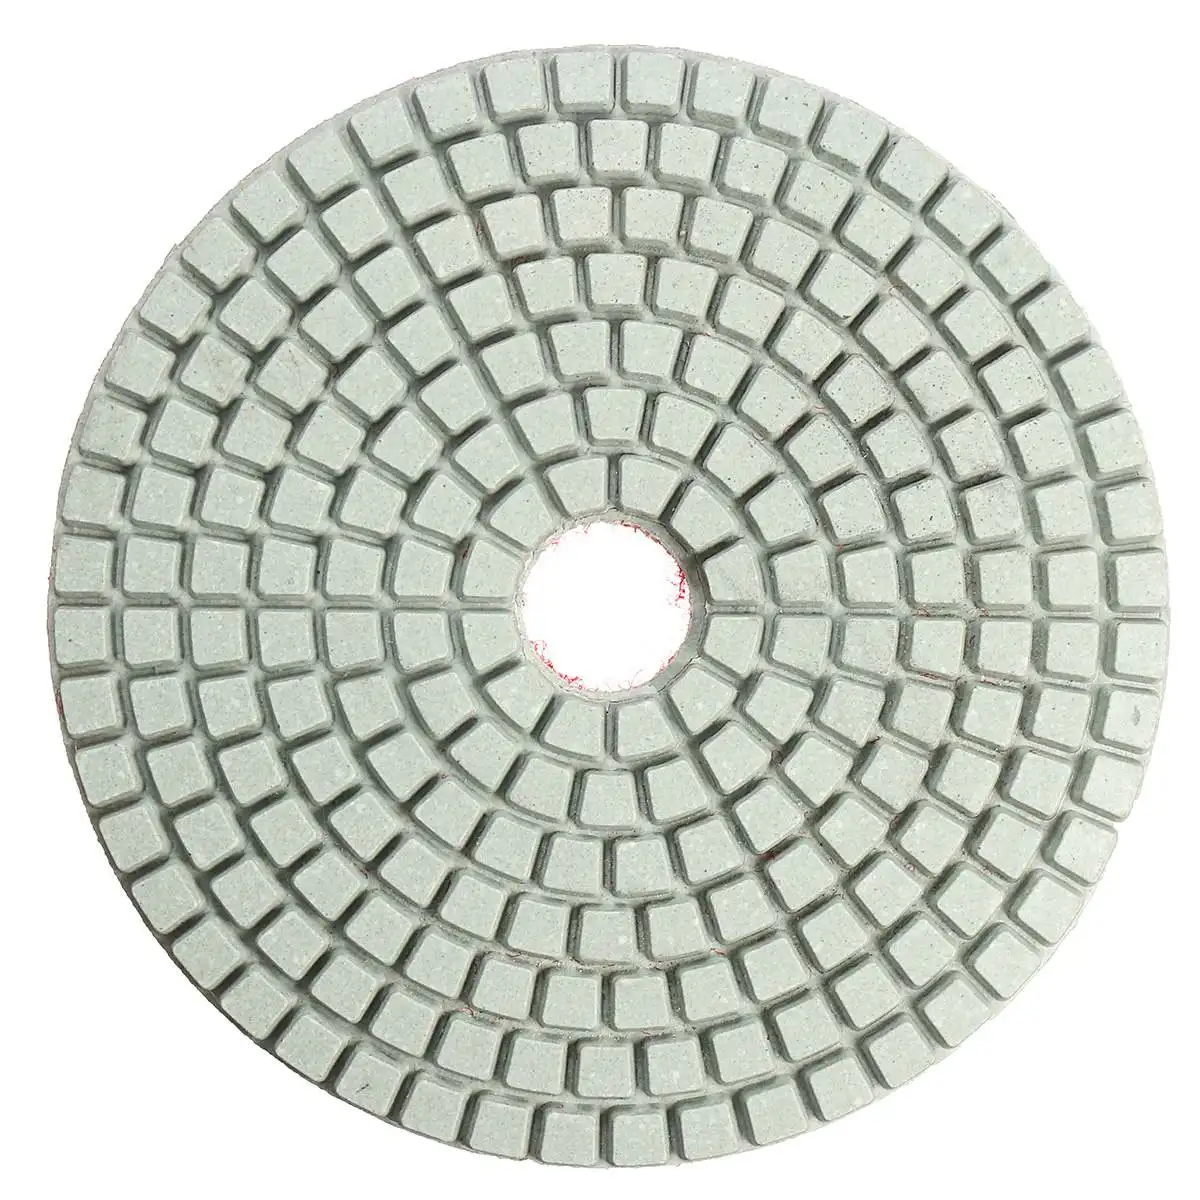 Новые 8 шт. 4 дюйма Алмазные полировальные колодки зернистость 50-3000# влажный/сухой M14 Гранит Бетон мрамор шлифовальный диск набор